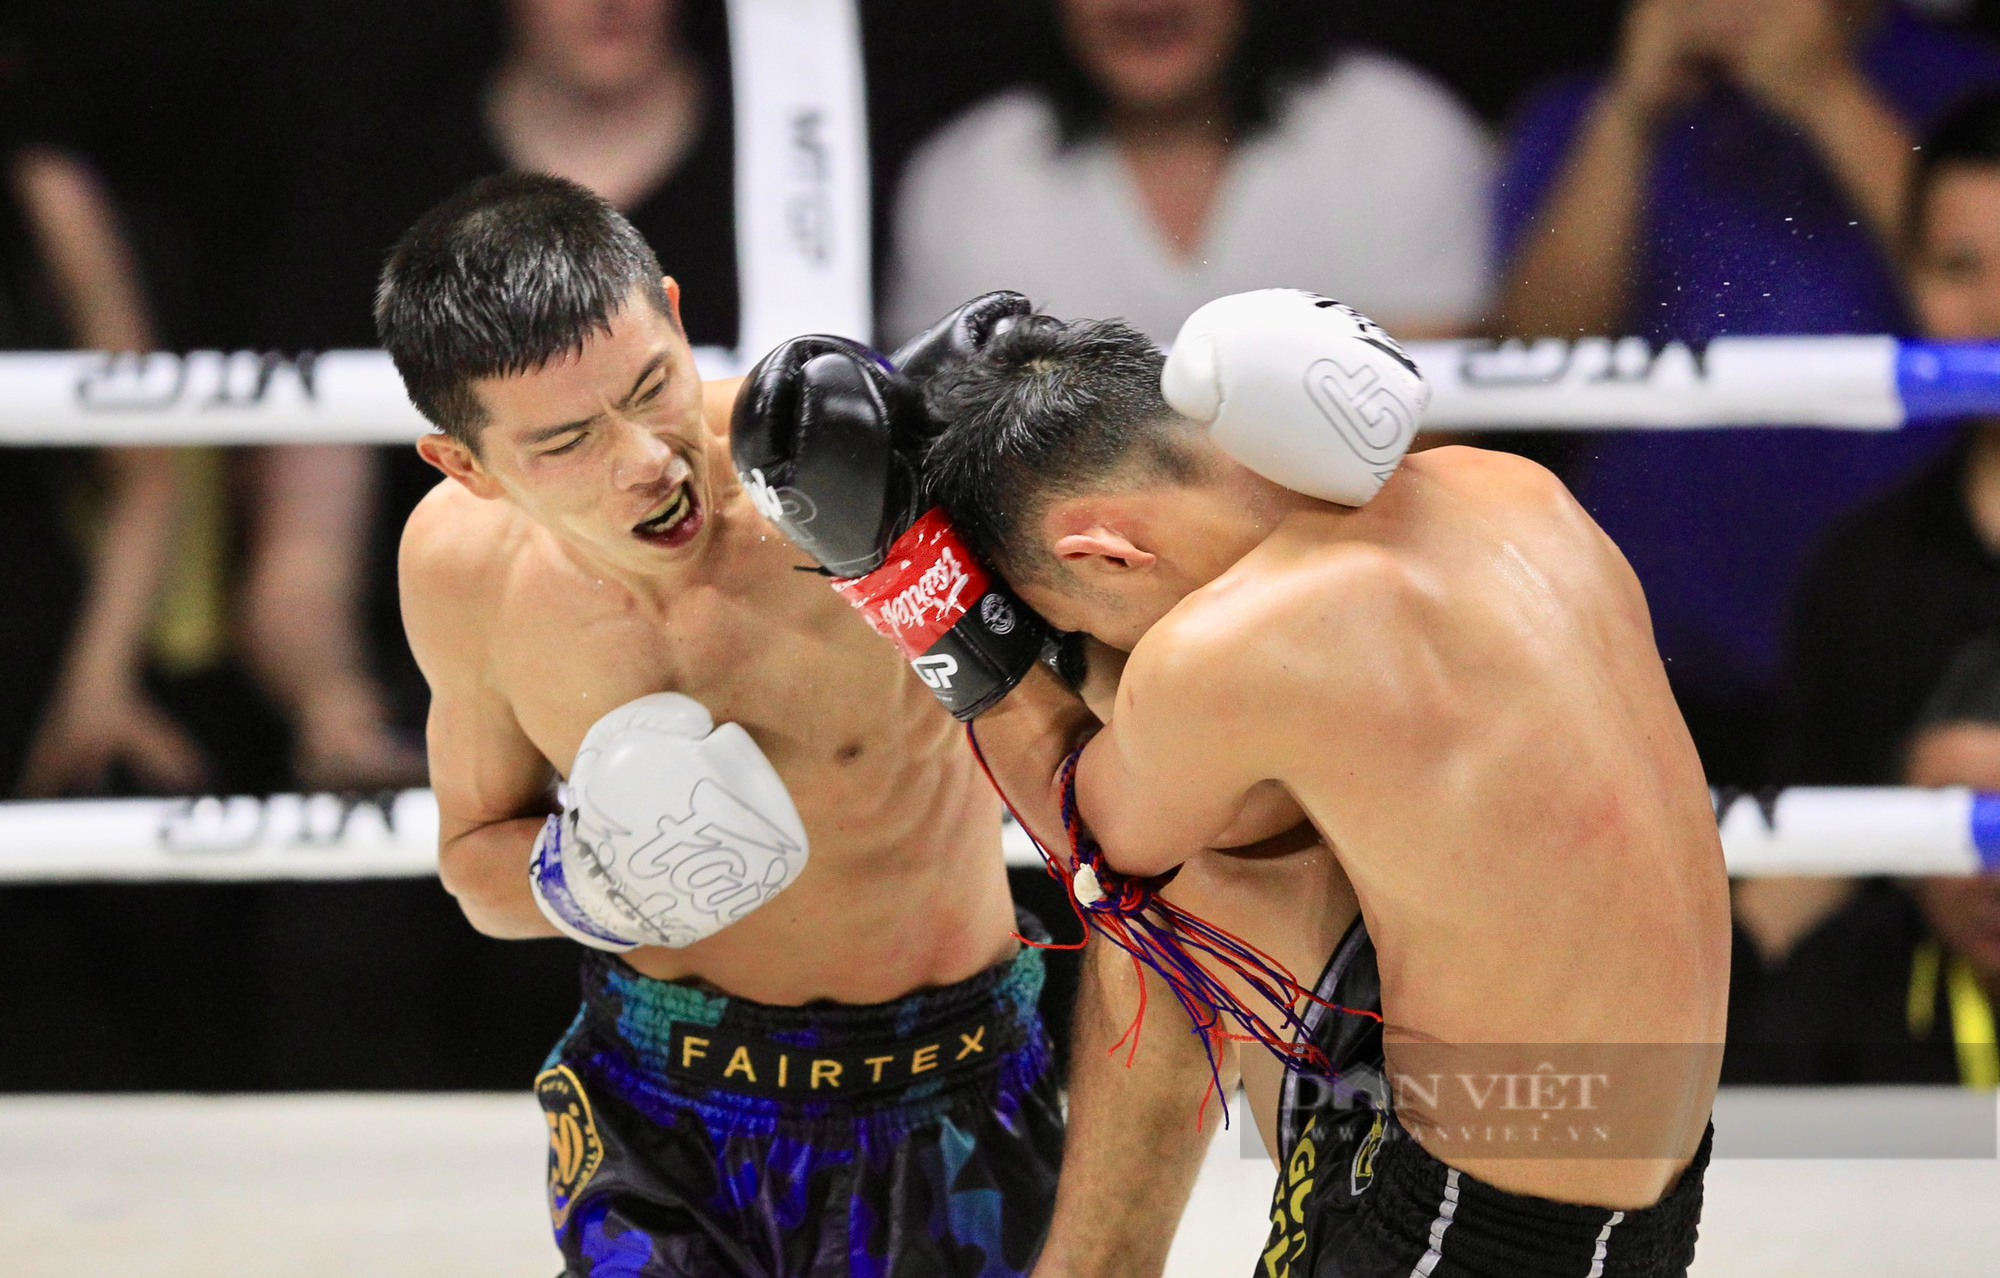 Liên tục cho võ sĩ Thái đo đài, nhà vô địch SEA Games Huỳnh Văn Tuấn khiến khán giả phấn khích - Ảnh 4.